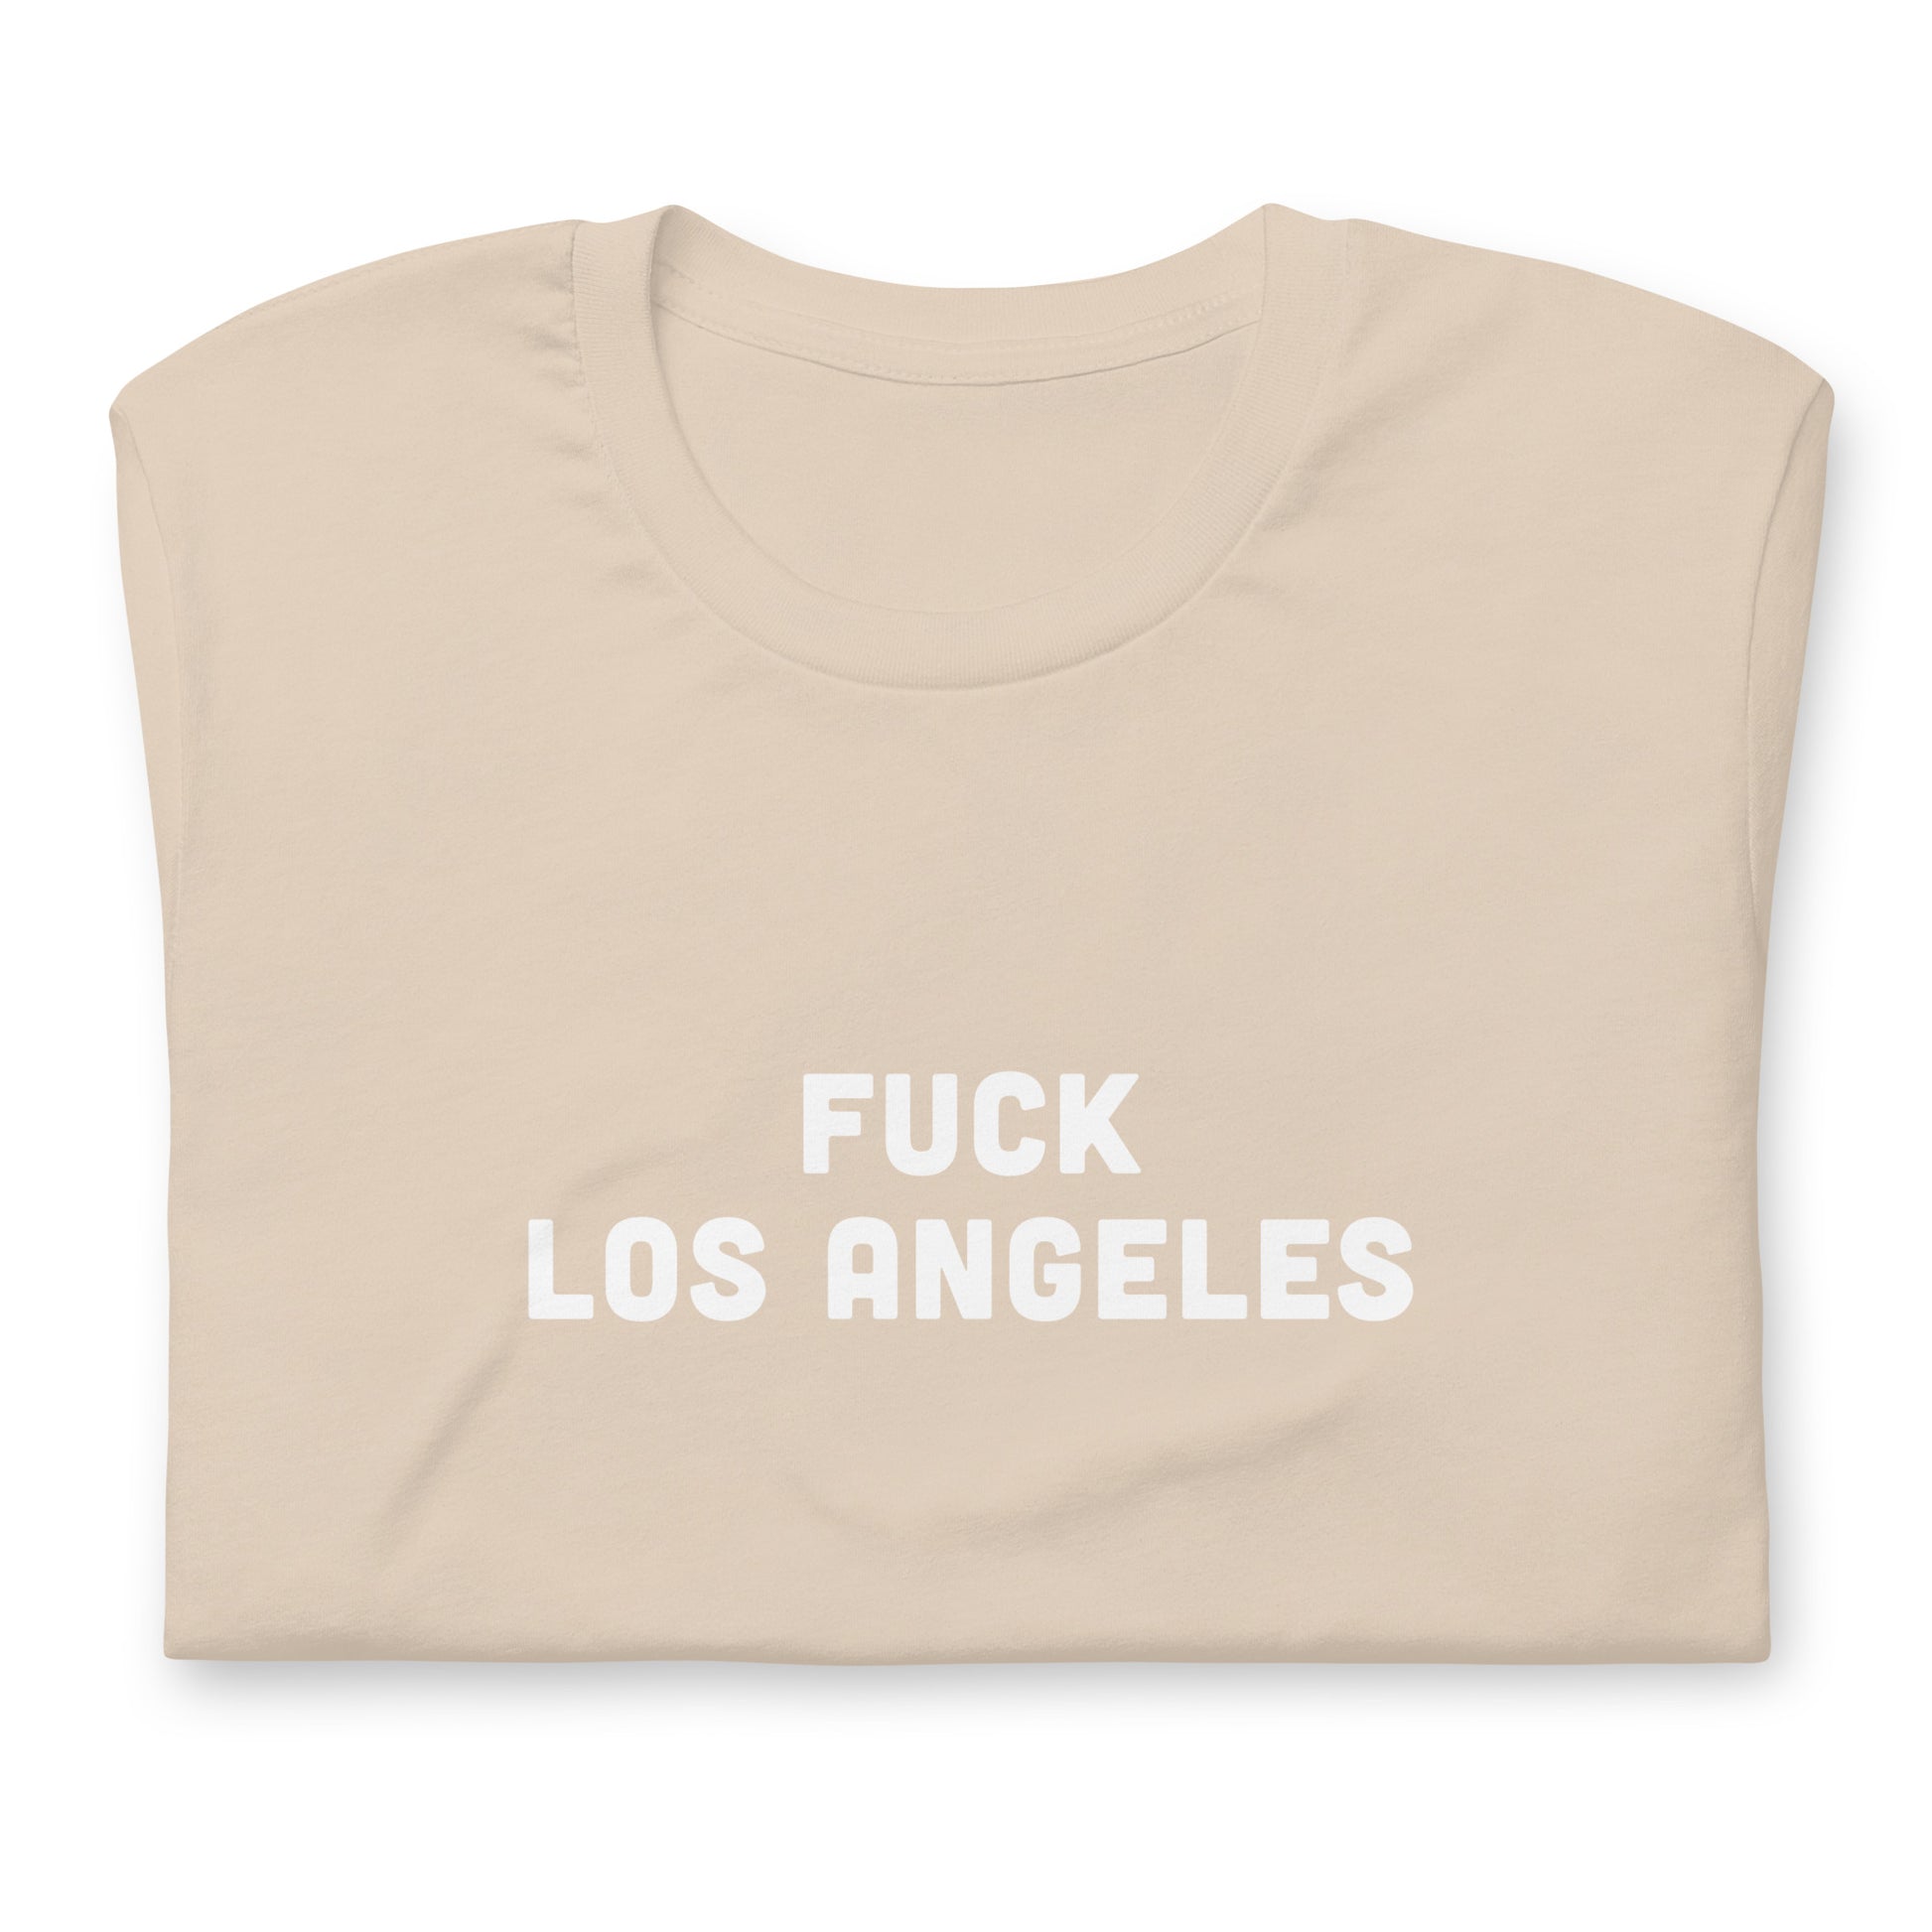 Fuck Los Angeles T-Shirt Size L Color Asphalt